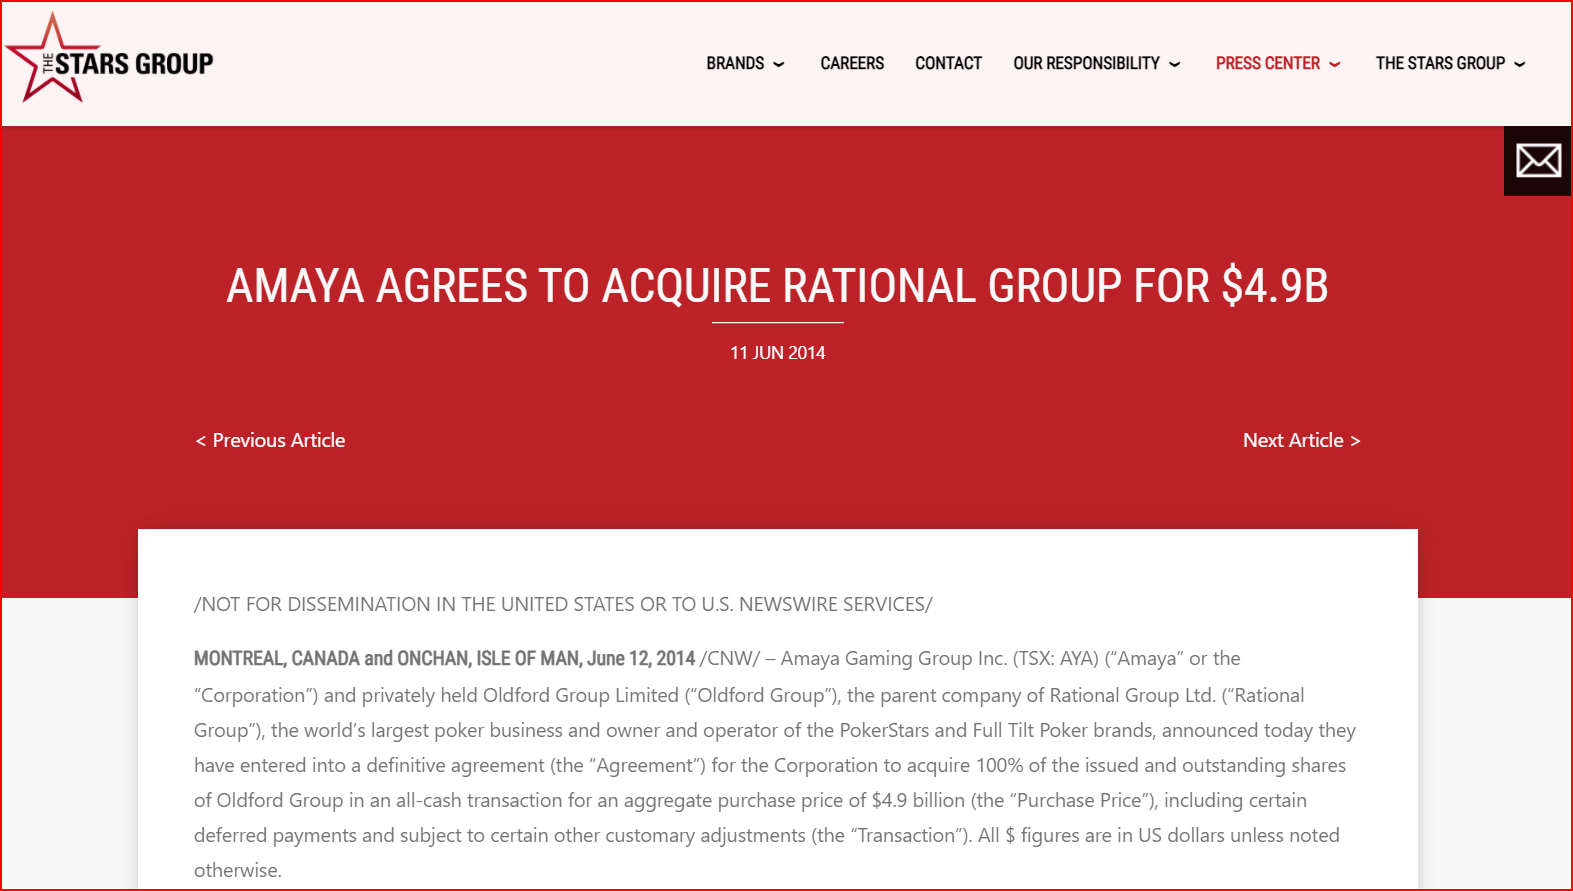 Объявление о сделке между Amaya и Rational Group на сайте The Stars Group, 11 июня 2014 года.